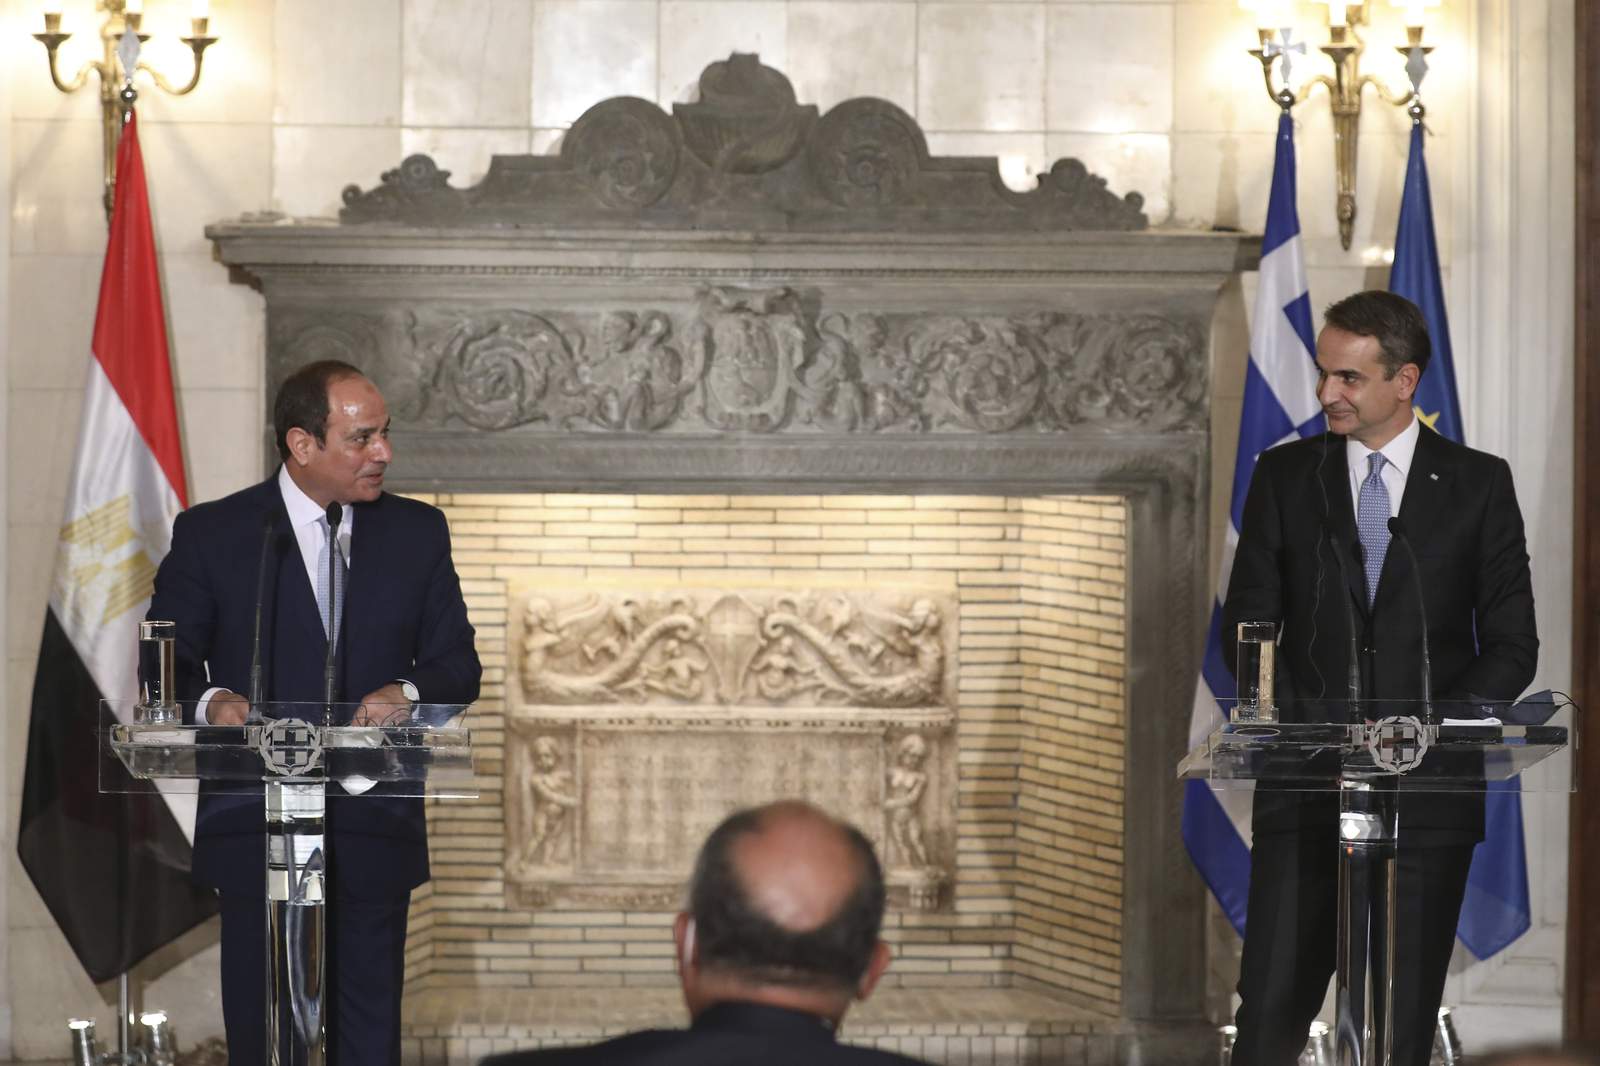 Greece, Egypt seek Biden role in East Mediterranean dispute